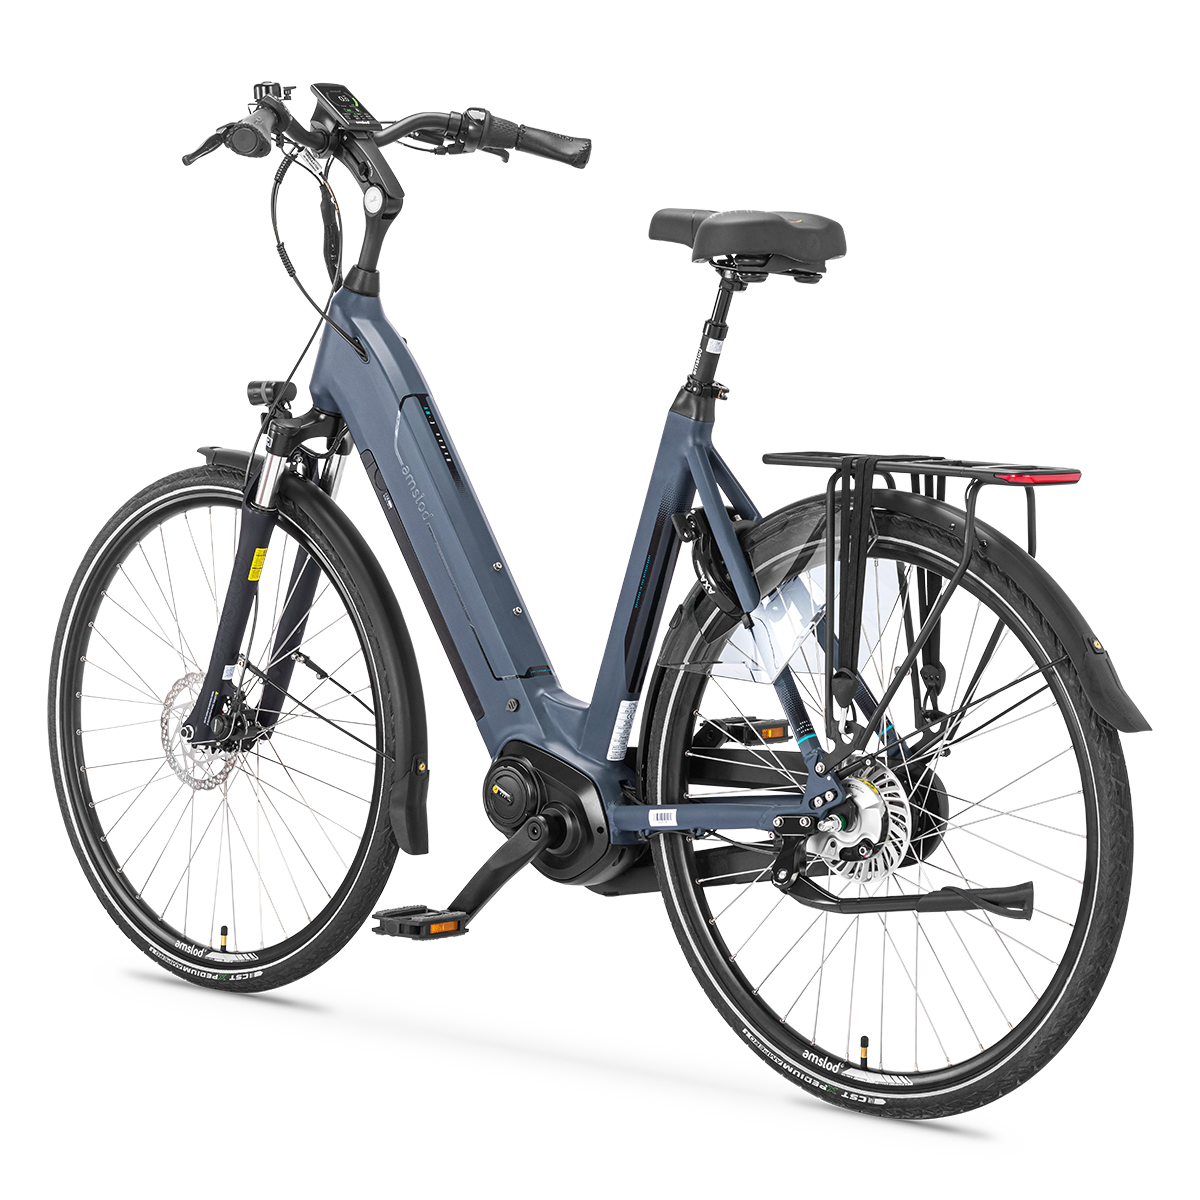 Afbeelding Amslod elektrische fiets active max hedon amslod fietsen 5